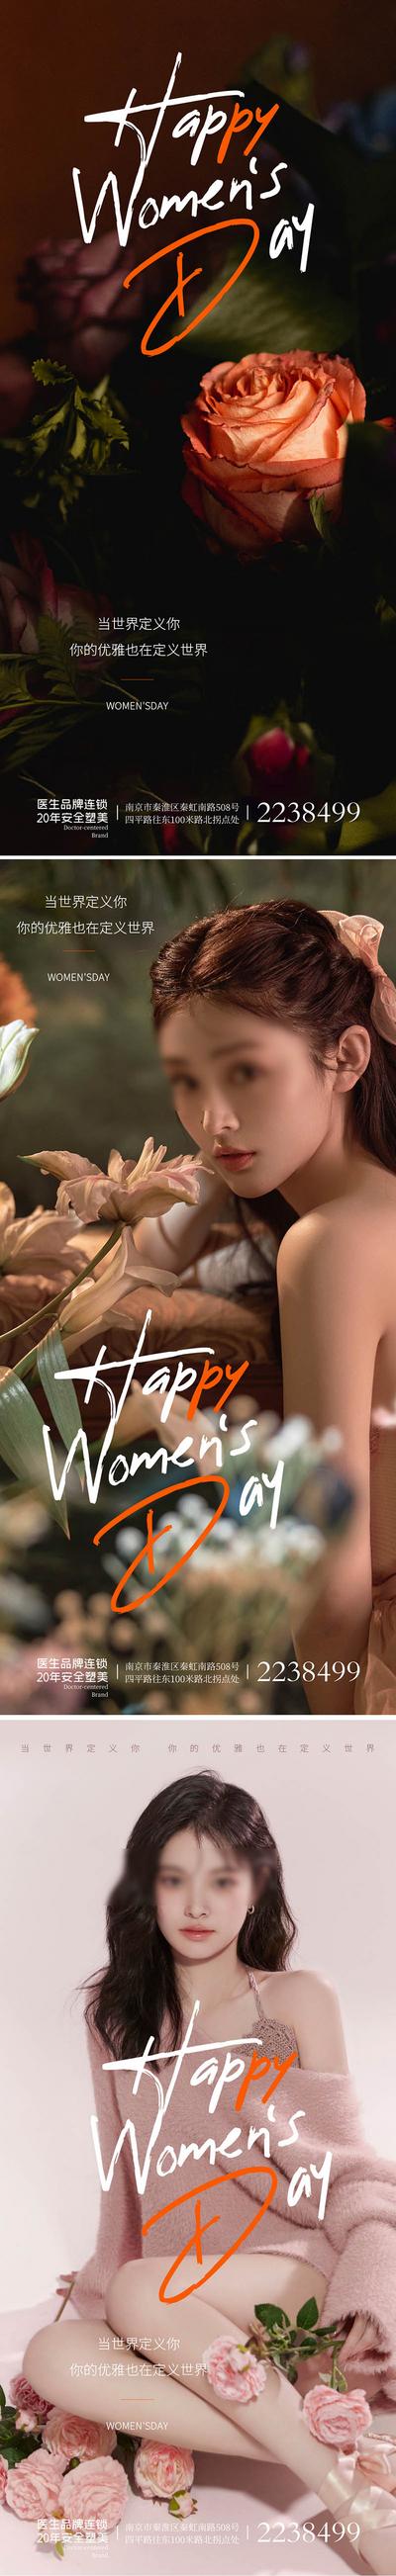 南门网 广告 海报 公历节日 女王节 女神节 38 妇女节 系列